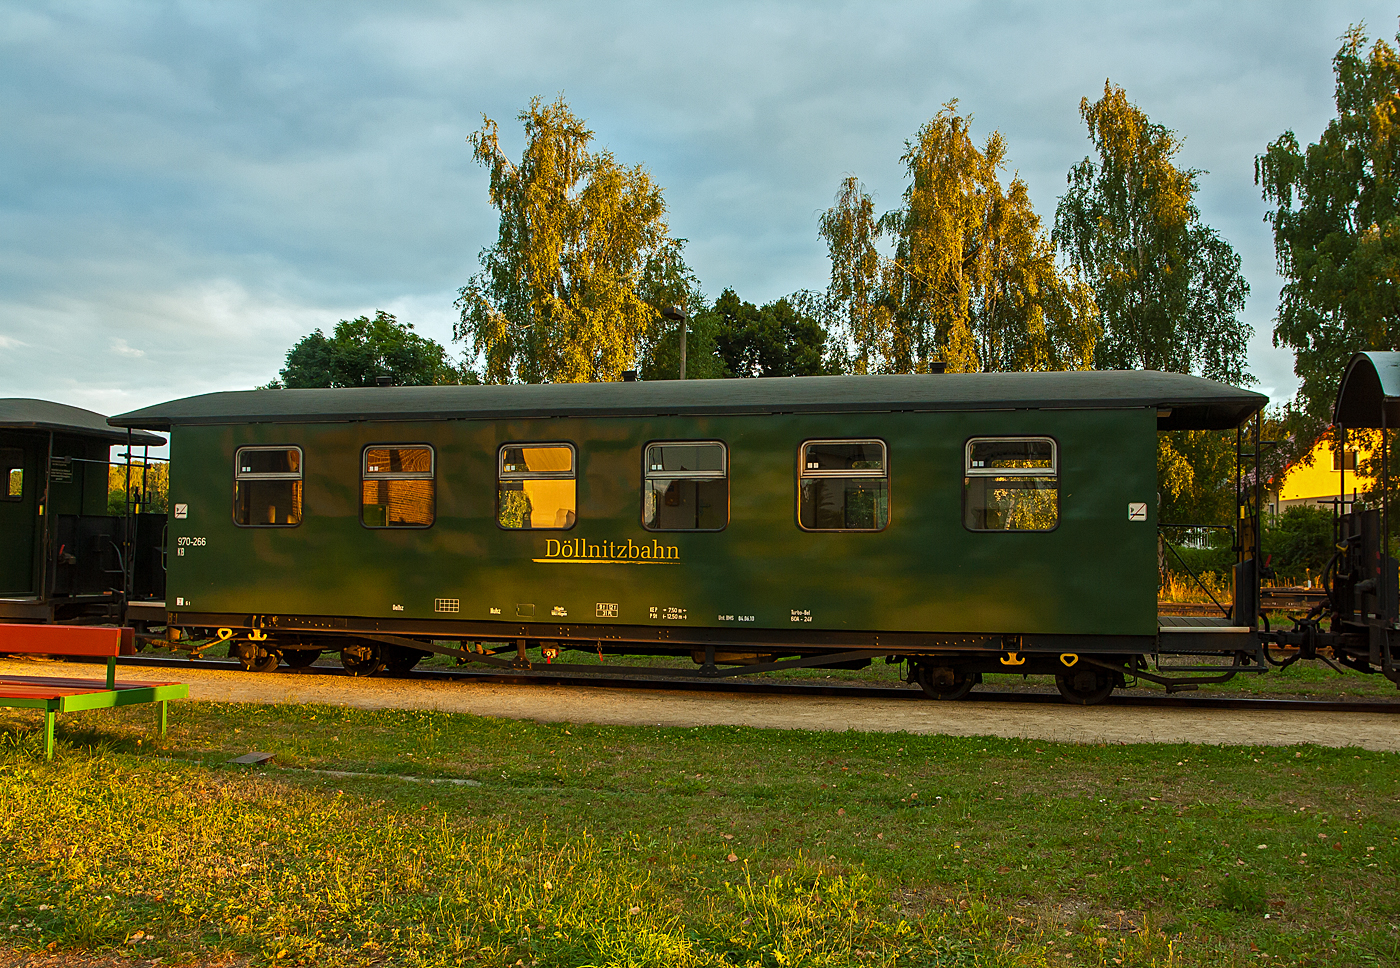 Vierachsiger 750 mm-Schmalspur 2.Klasse Personenwagen mit offenen Plattformen und Holzdach, DBG  970-266, ex SOEG 970-266. ex DR 970-266, der Gattung KB4, der Döllnitzbahn GmbH (DBG) abgestellt am 27.08.2013, beim letzten Sonnenlicht, im Bahnhof Mügeln.

Der Wagen wurde 1914 von der Waggonbau Bautzen für die K.Sächs.Sts.E.B. gebaut, 1994 wurde er von der Deutschen Reichsbahn (DR) durch die Sächsisch-Oberlausitzer Eisenbahngesellschaft (SOEG) und wurde später an die Döllnitzbahn GmbH (DBG) verkauft. Er ist modernisiert (Reko I).

TECHNISCHE DATEN:
Spurweite: 750 mm
Anzahl der Achsen: 4
Länge über Puffer: 12.800 mm
Drehzapfenabstand: 7.500 mm
Eigengewicht: 9 t
Sitzplätze: 31(in der 2. Klasse)
Bremse: KE-P
